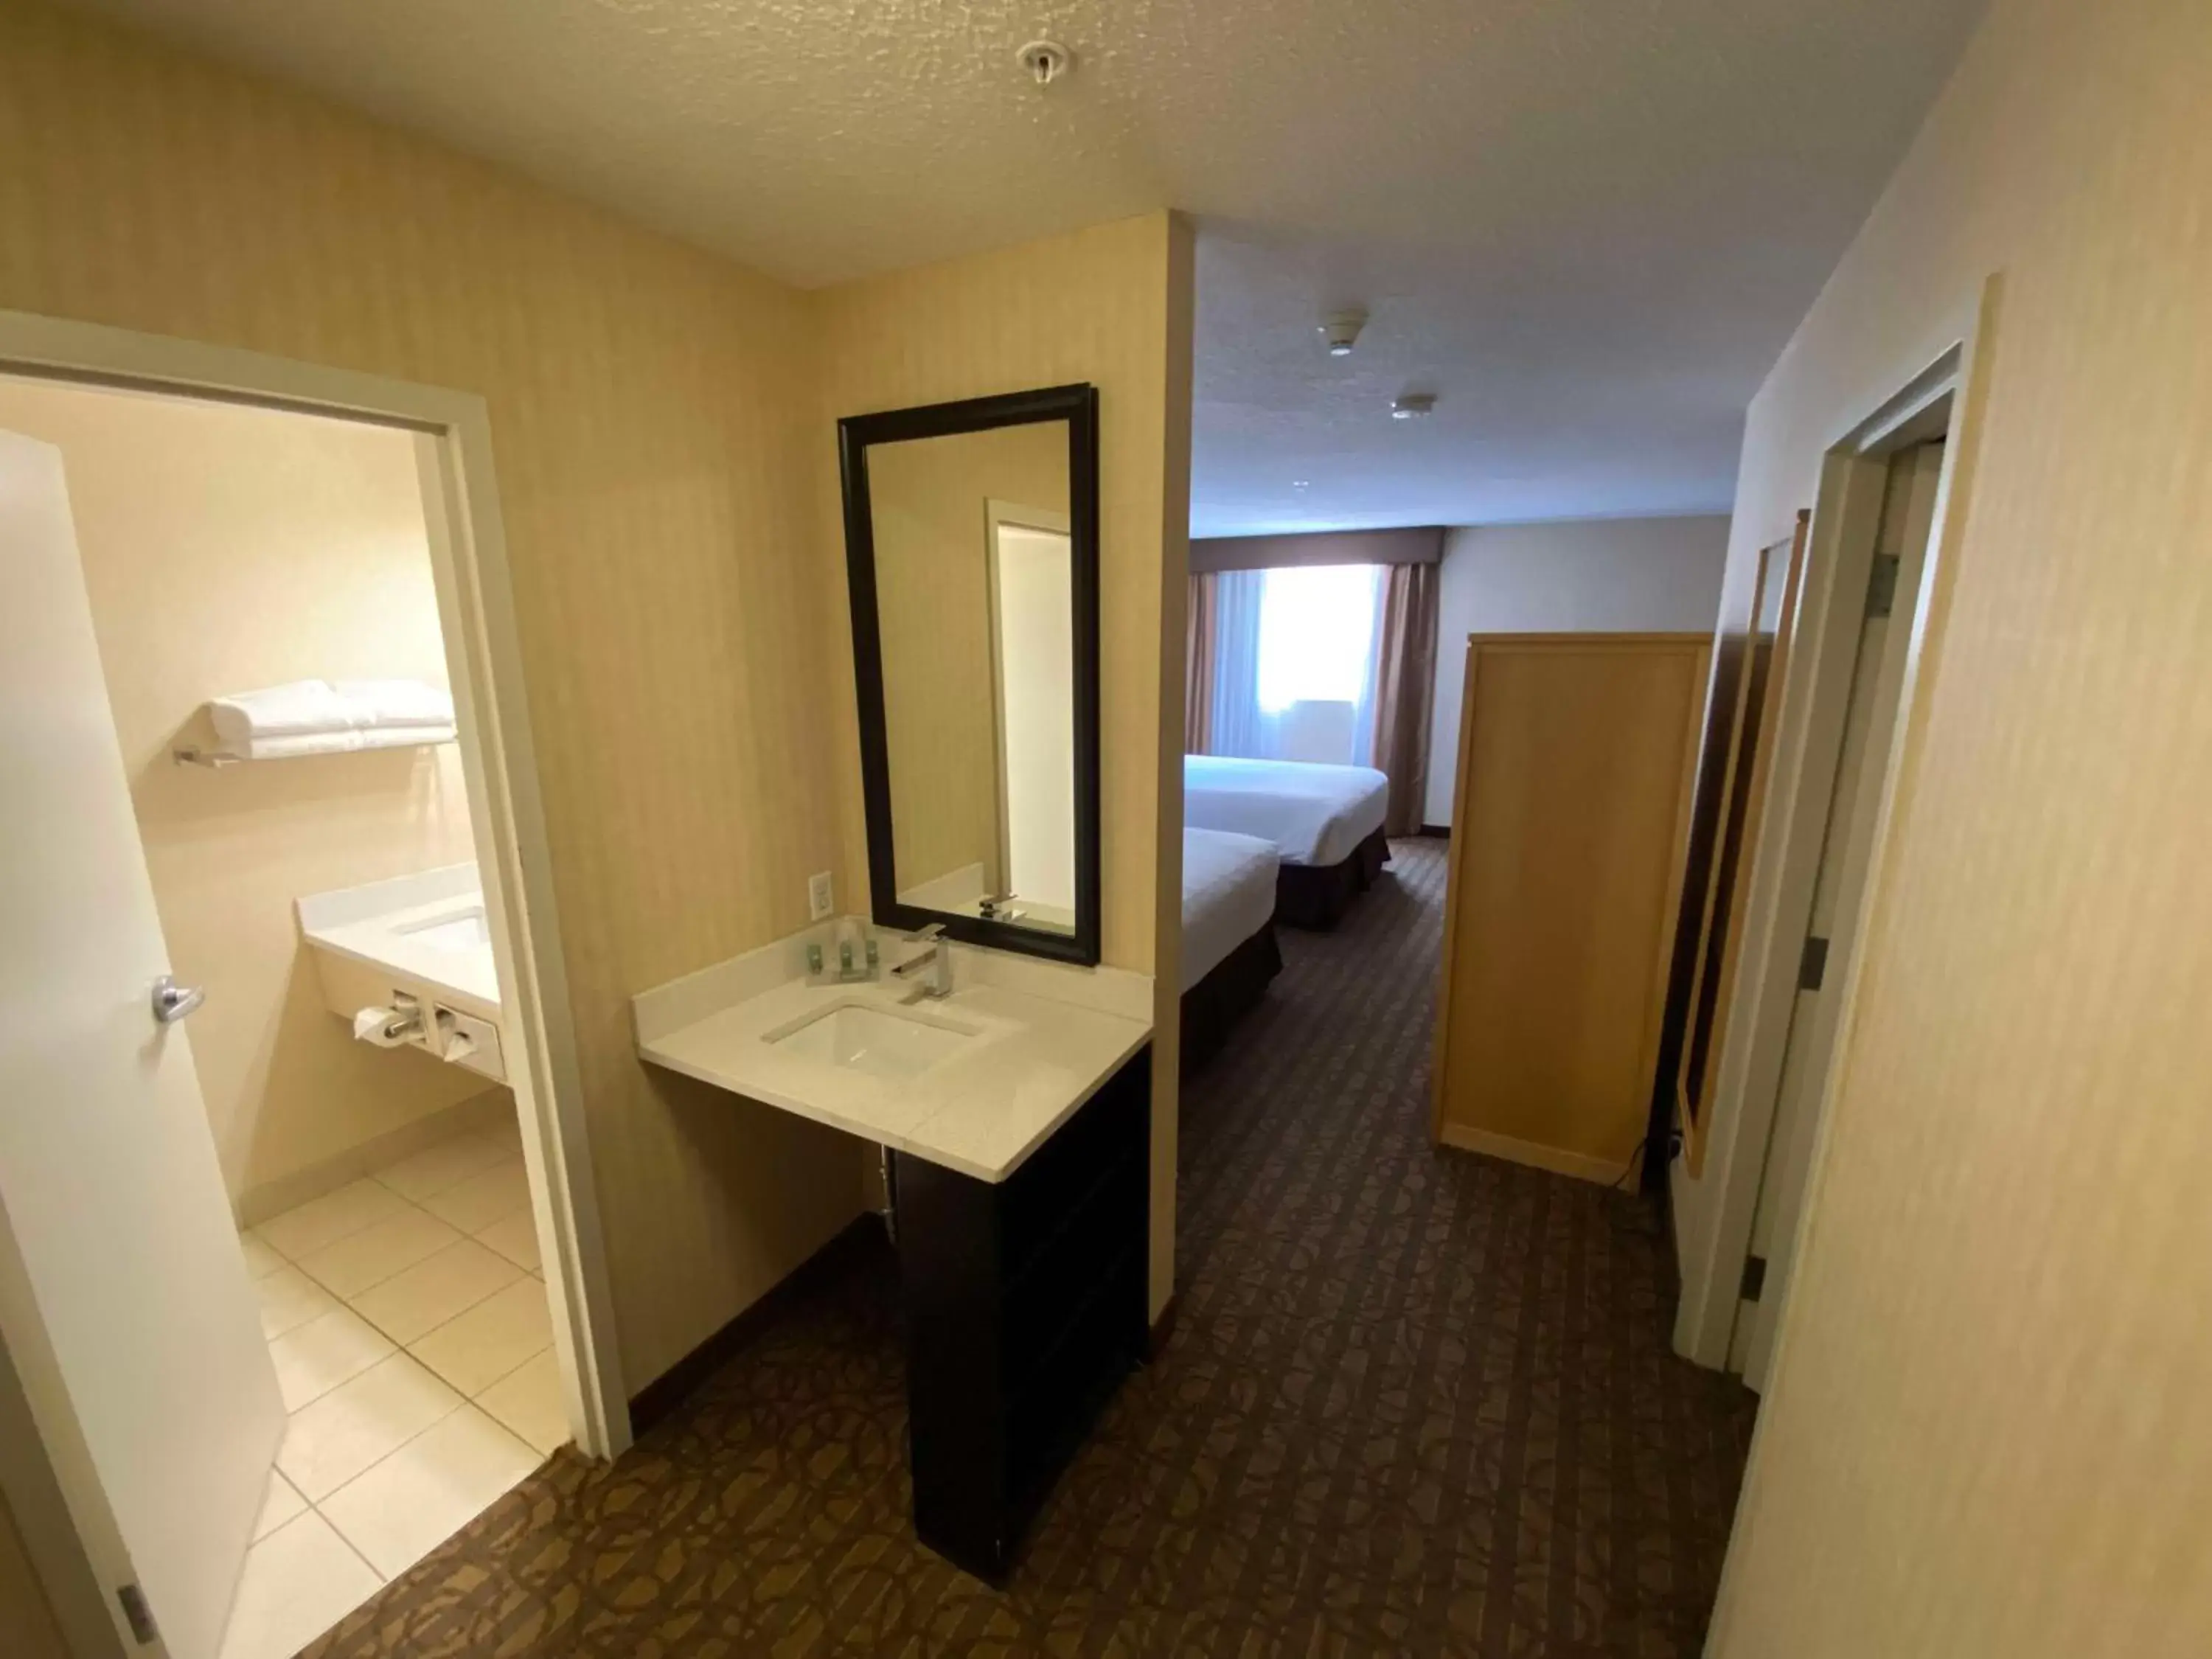 Bedroom, Bathroom in Best Western Cold Lake Inn